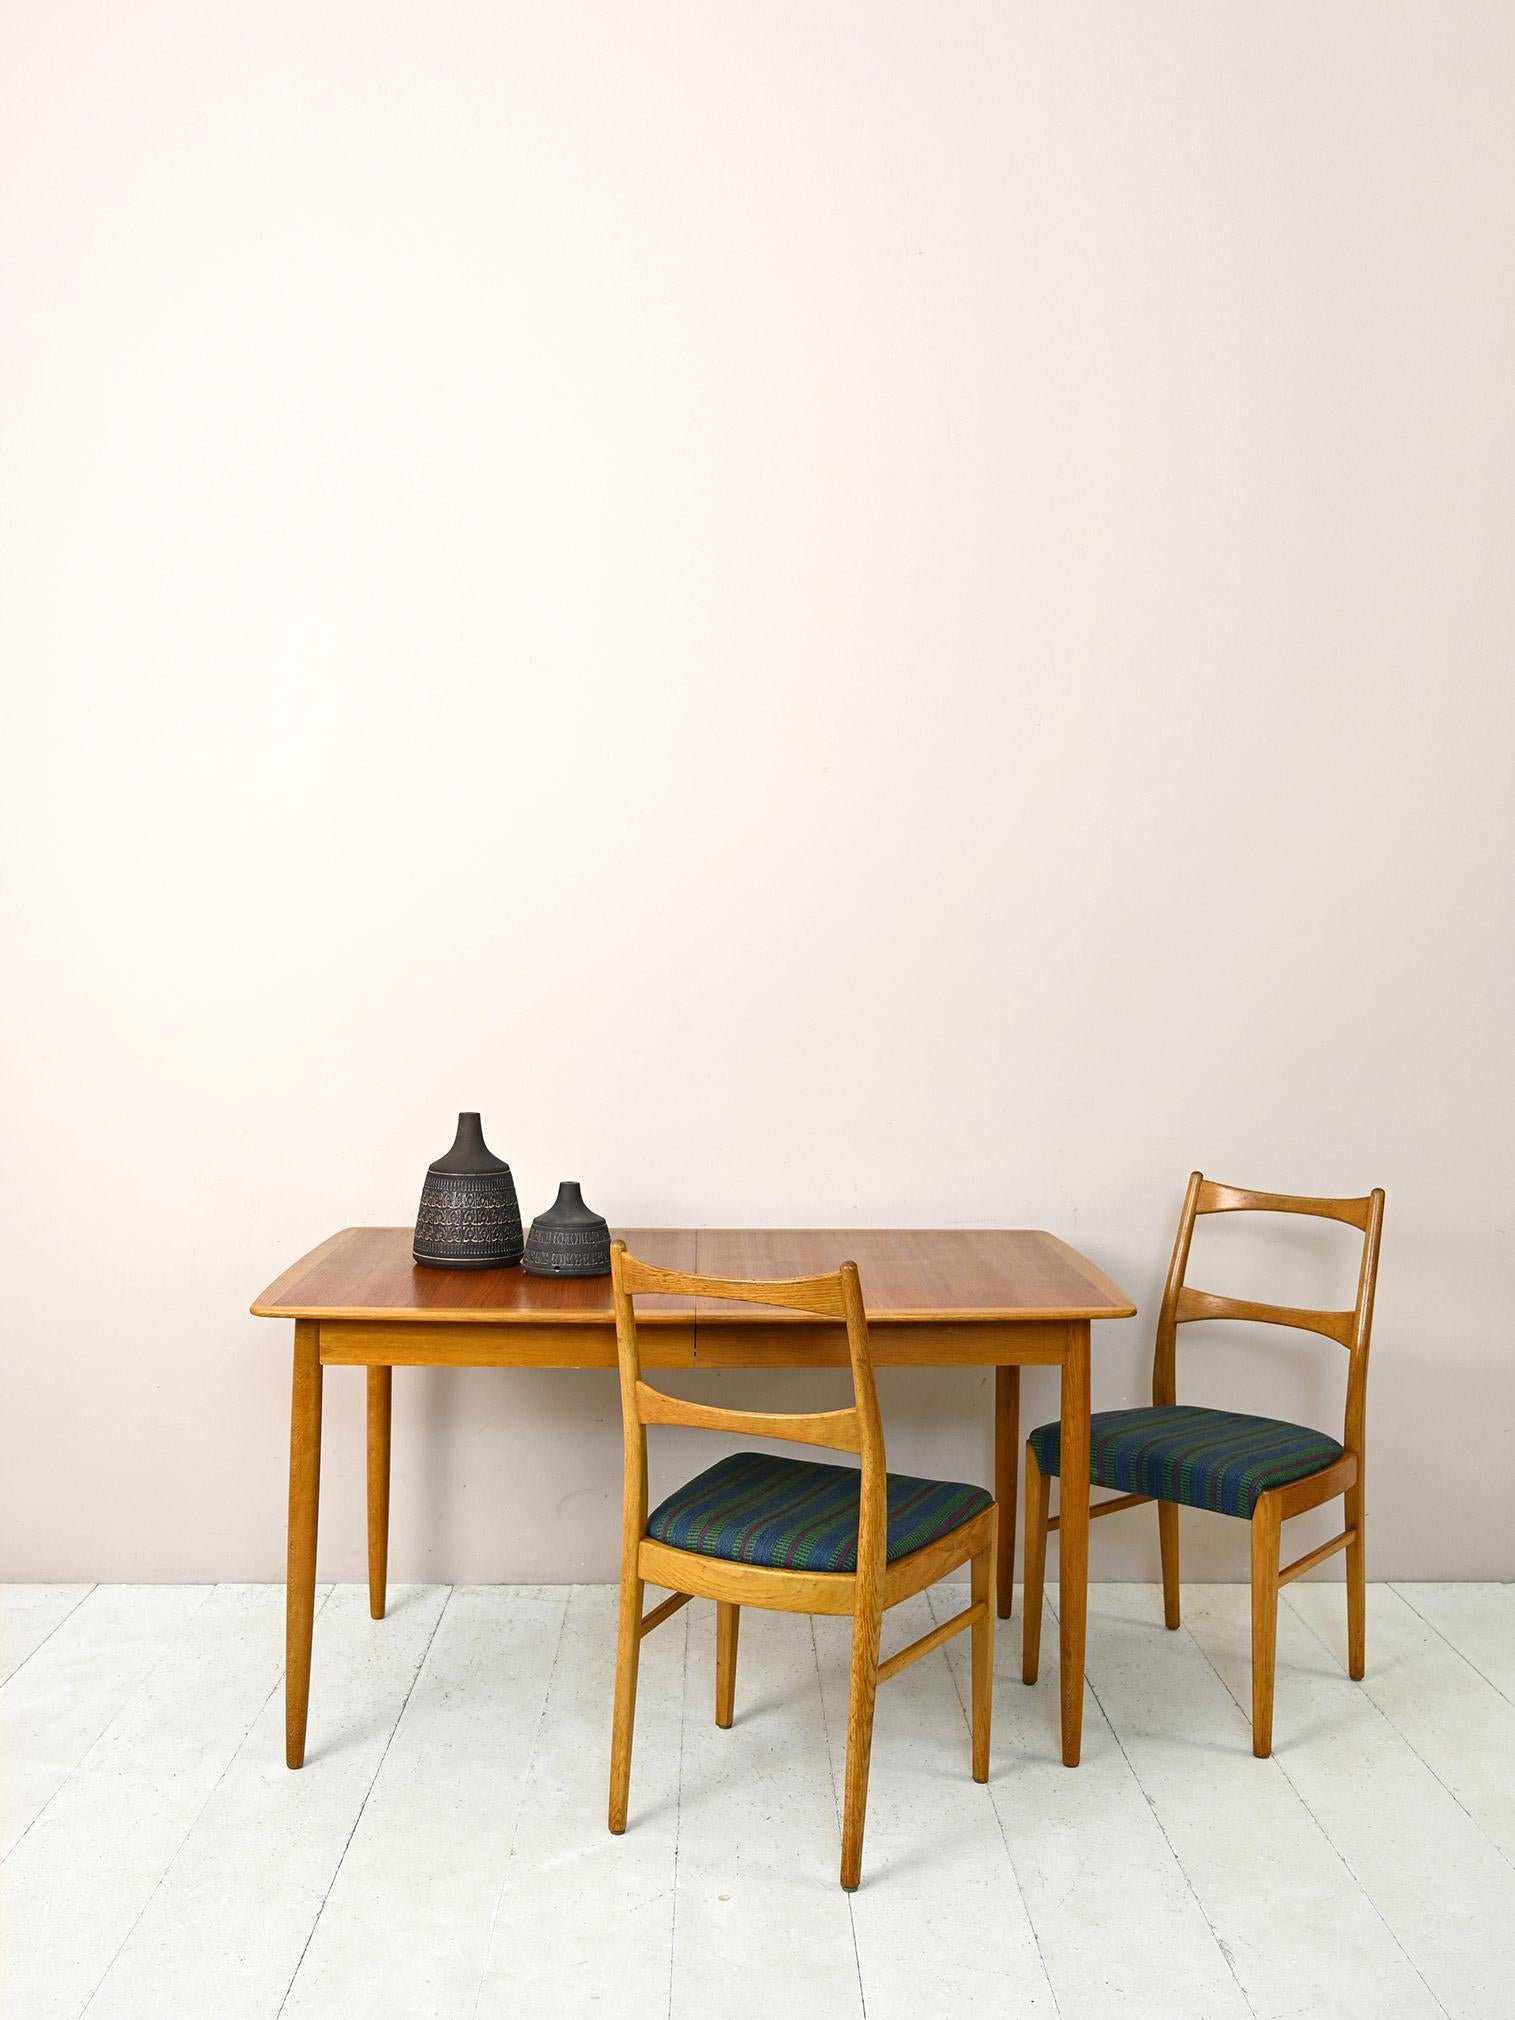 Esstisch aus skandinavischer Fertigung aus den 1960er Jahren.

Ein praktisches Möbelstück im perfekten skandinavischen Stil, das aus einer Platte mit weichen Kanten besteht, die von einem hellen Eichenholzprofil umrahmt wird.
Die konischen Beine aus